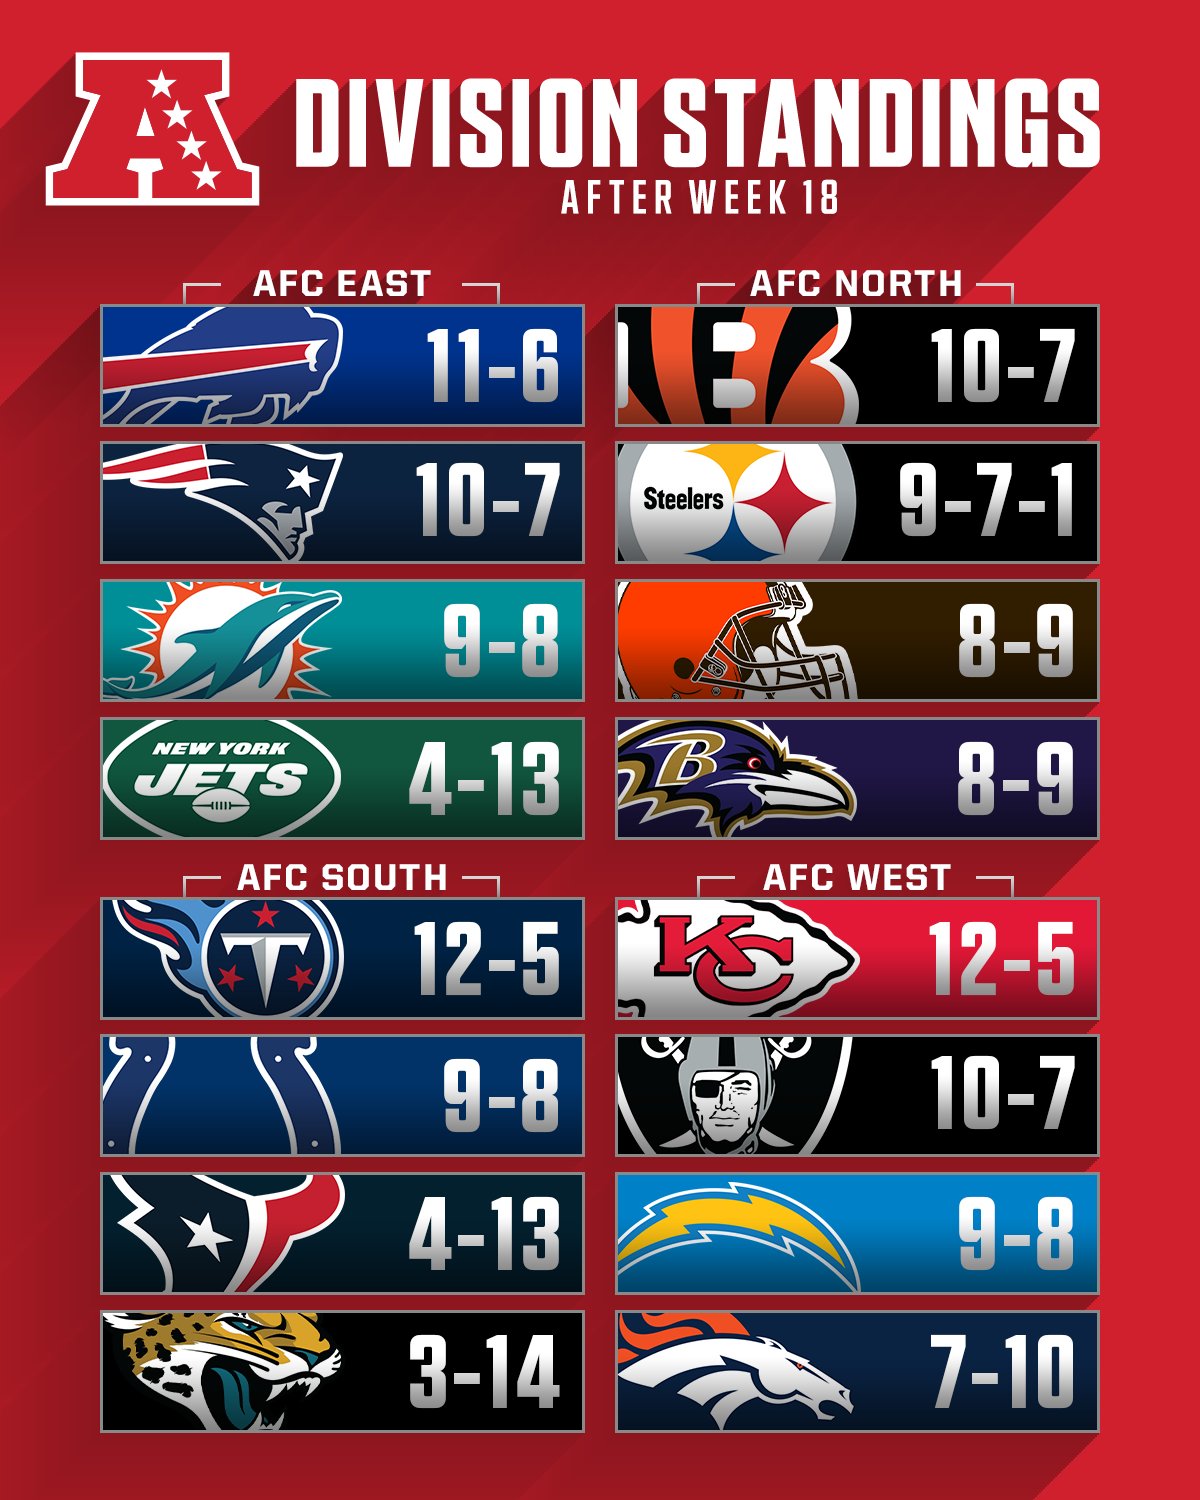 NFL Teams - NFL Teams by Division